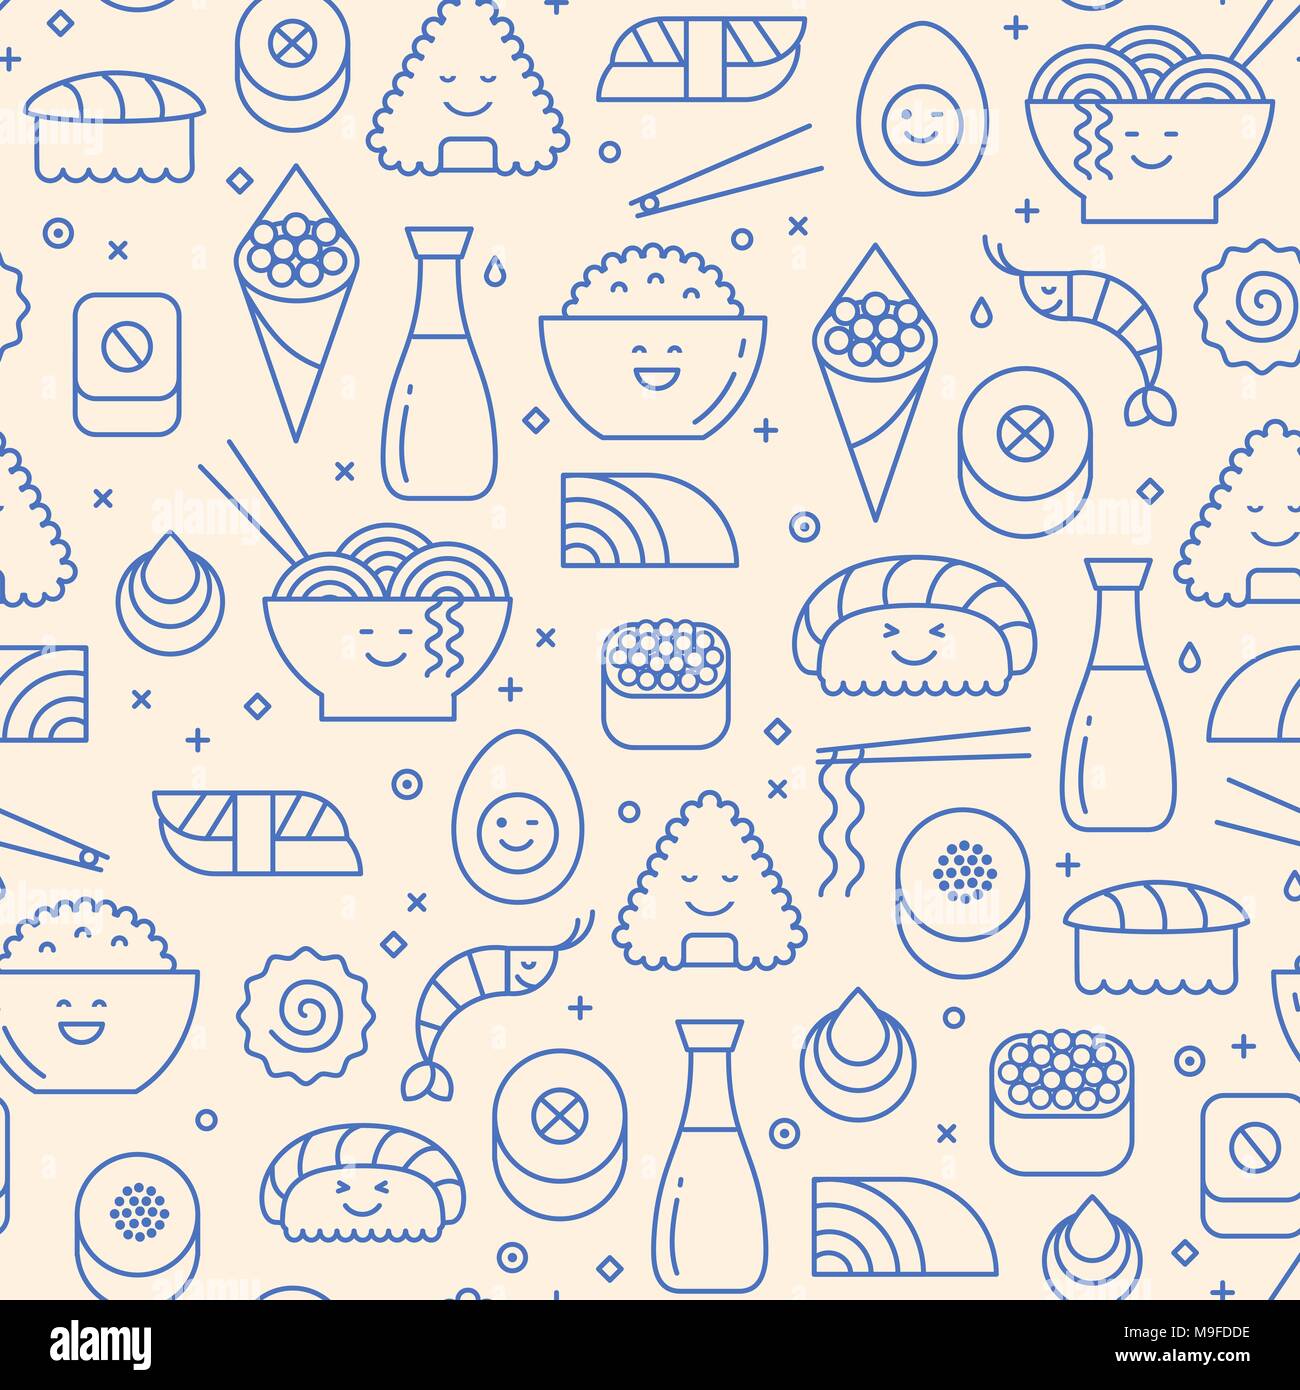 Transparente avec motif vecteur comme la cuisine japonaise sushi, riz, pains et poissons. Icônes bleues sur fond beige. Smiling faces, kawaii en dessins au trait. Illustration de Vecteur